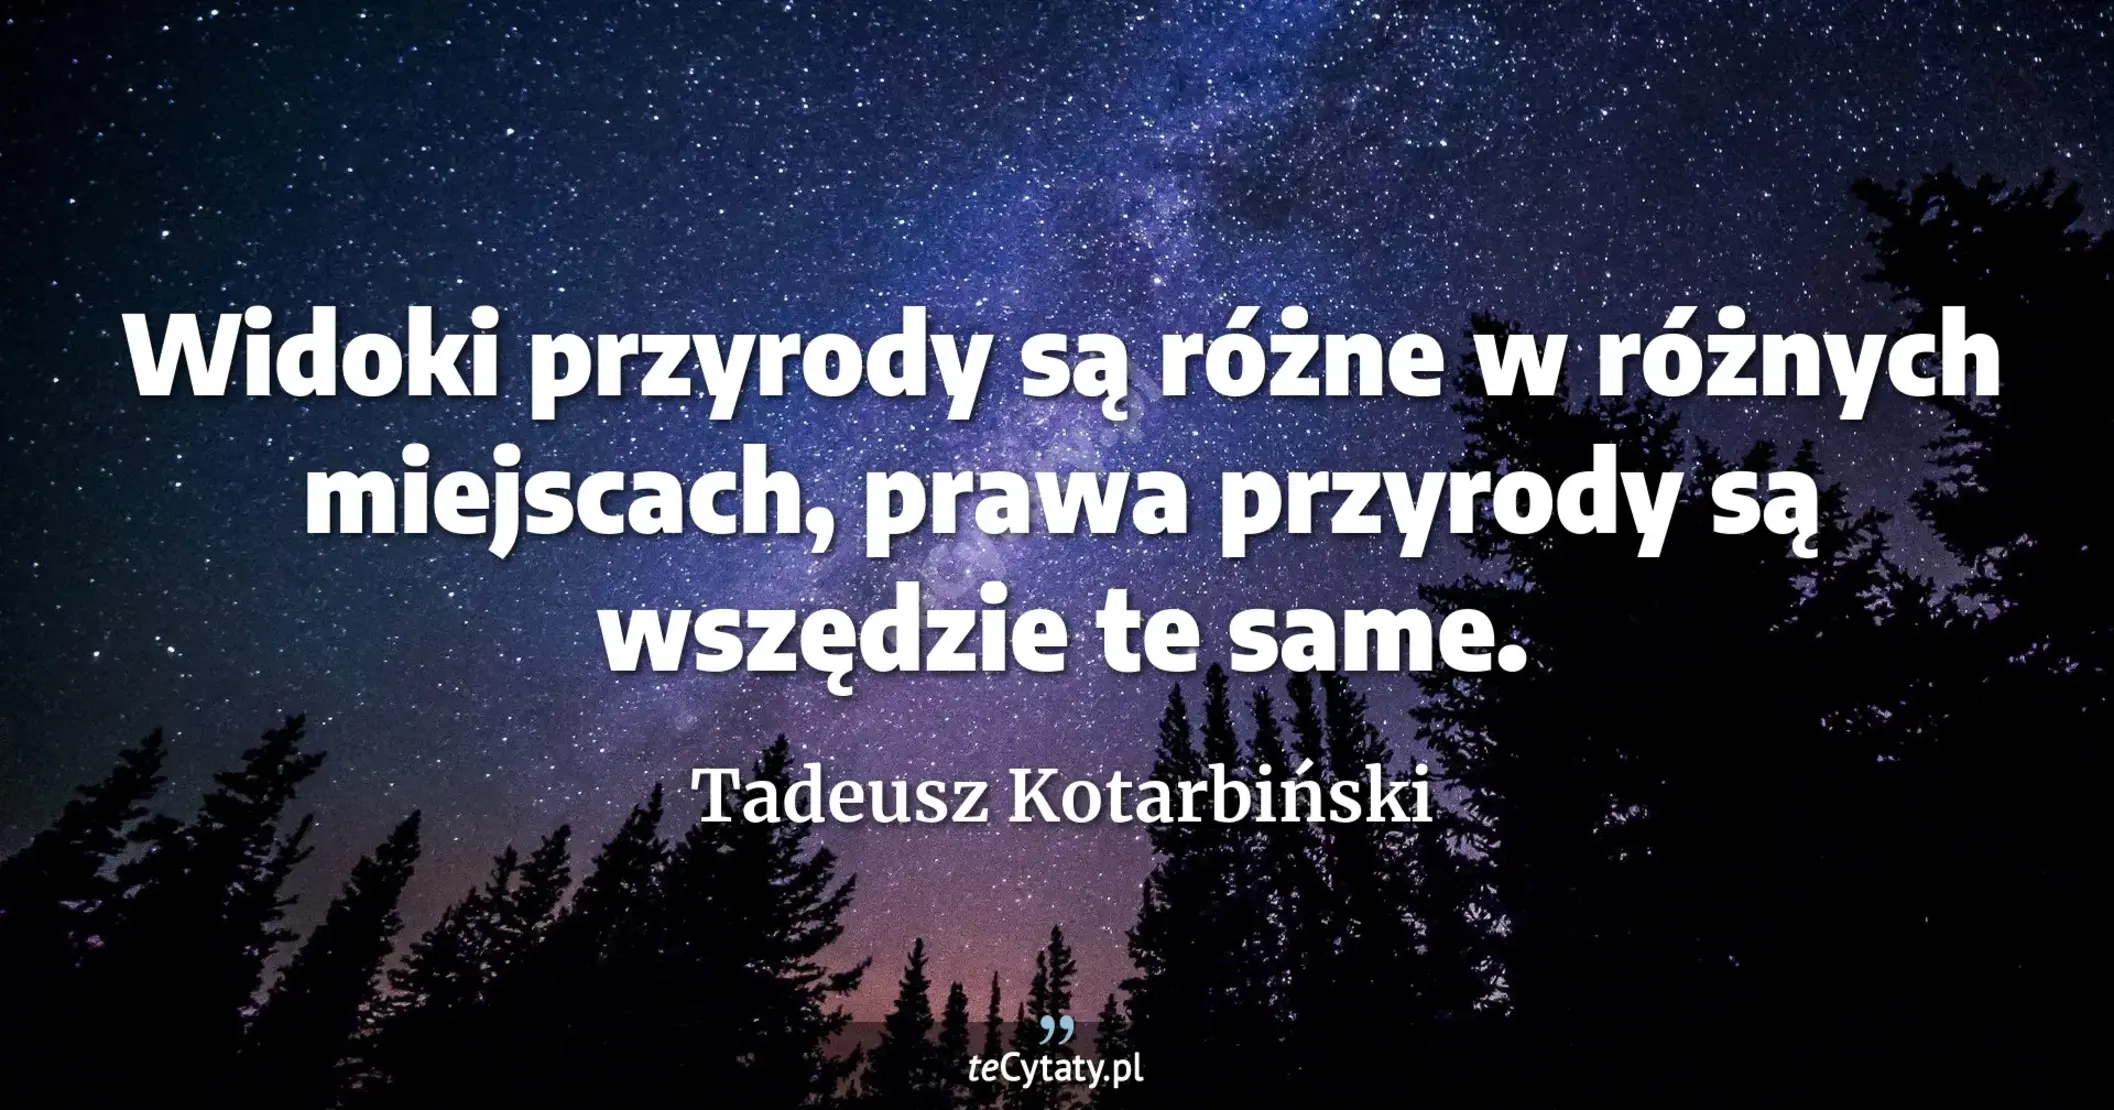 Widoki przyrody są różne w różnych miejscach, prawa przyrody są wszędzie te same. - Tadeusz Kotarbiński